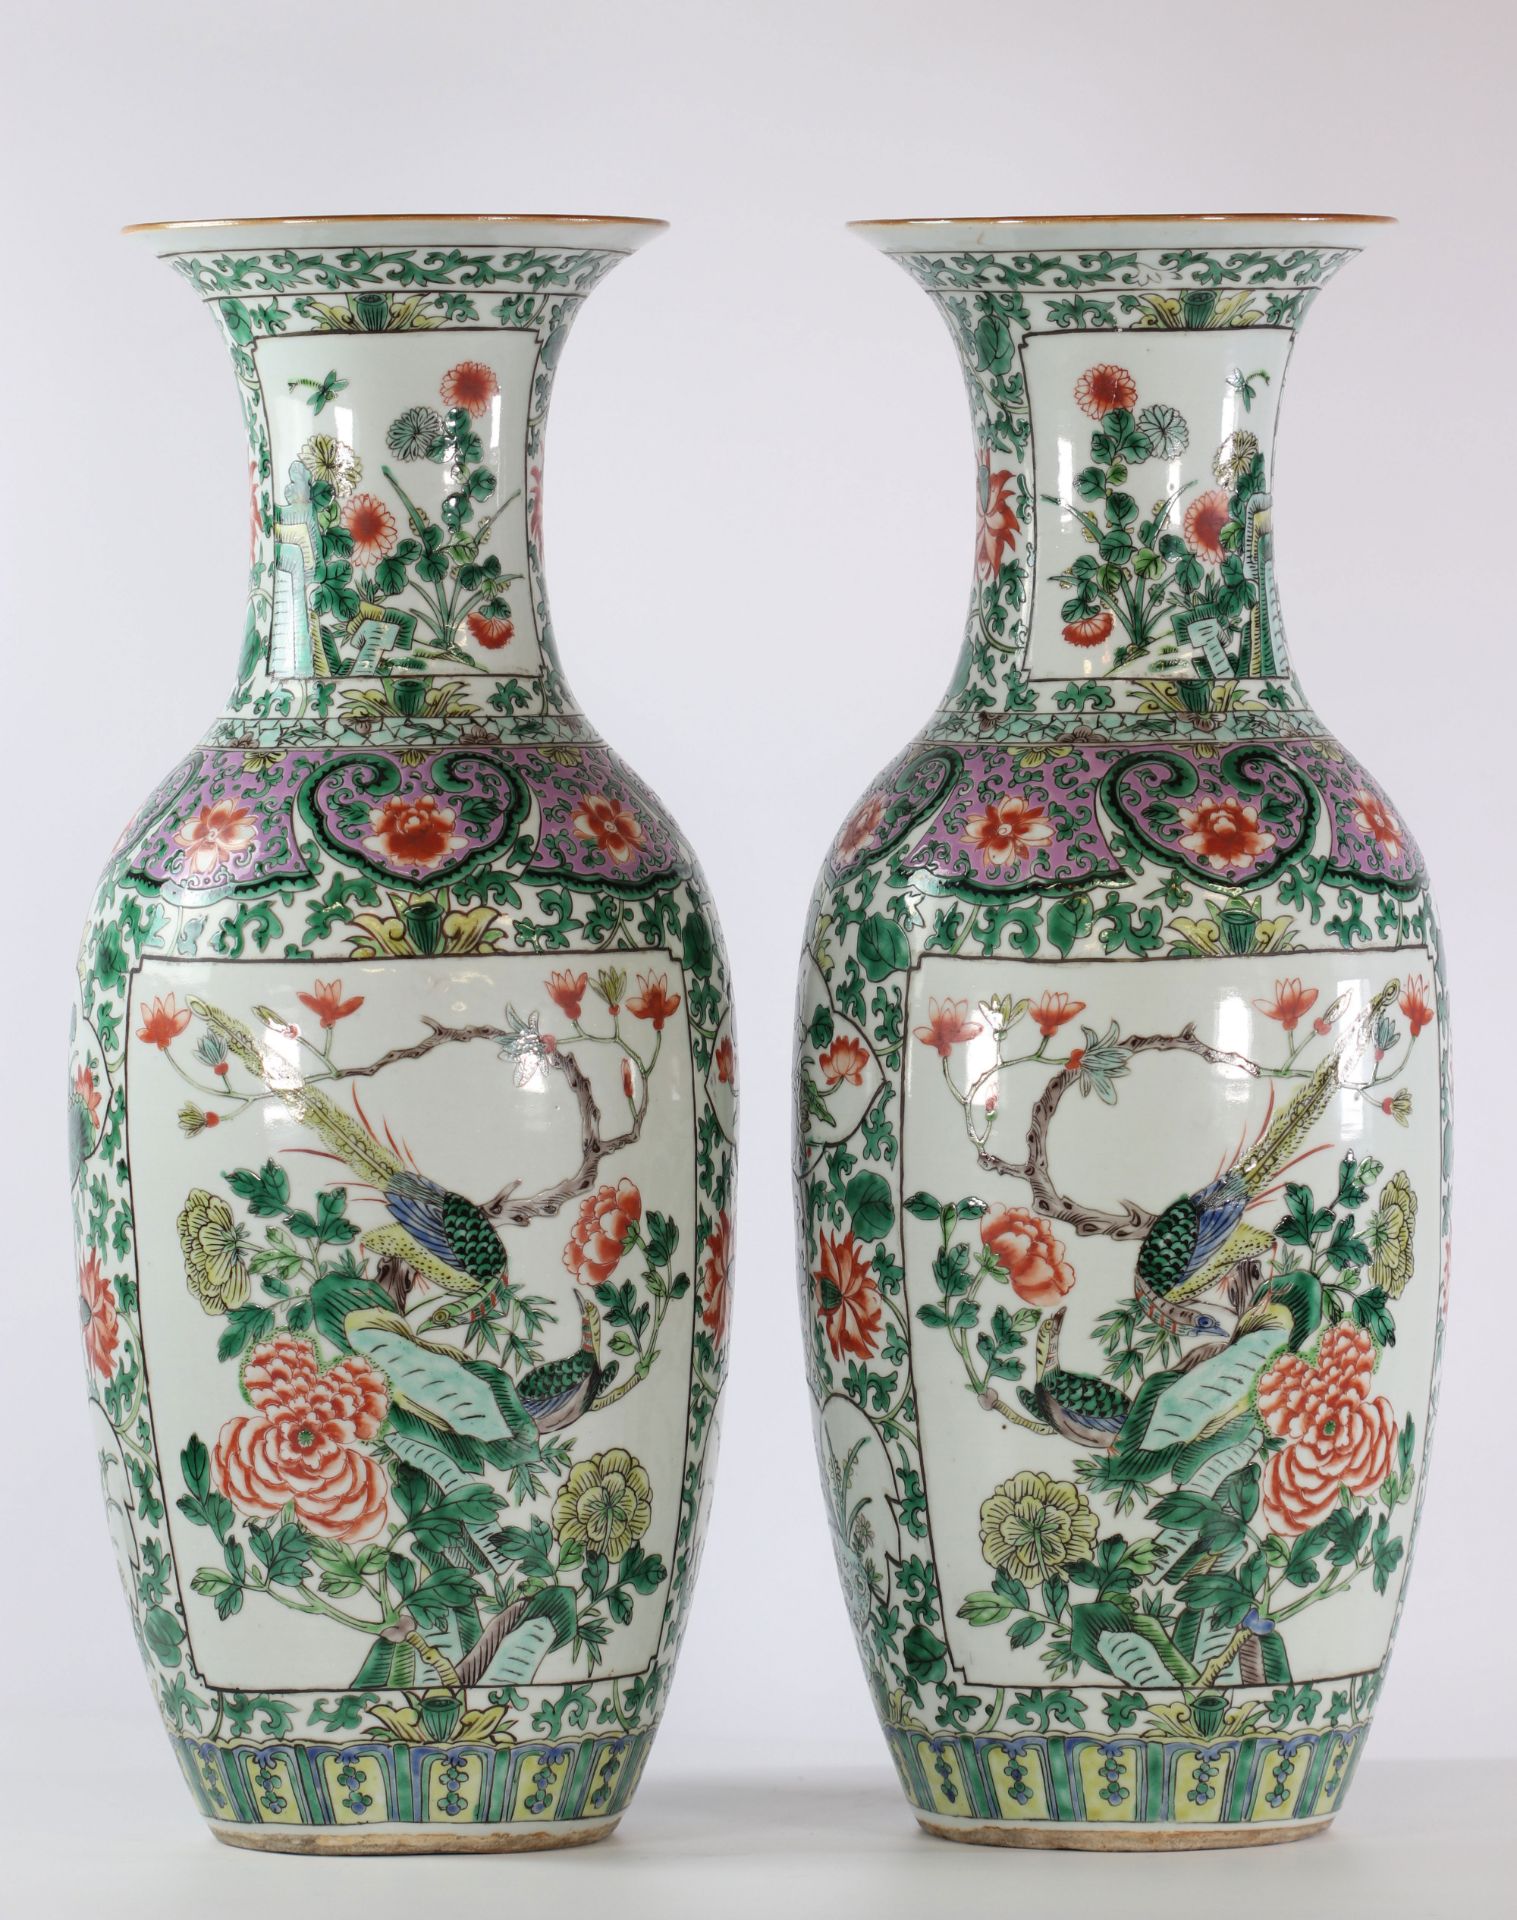 China pair of famille verte porcelain vase 19th bird decor